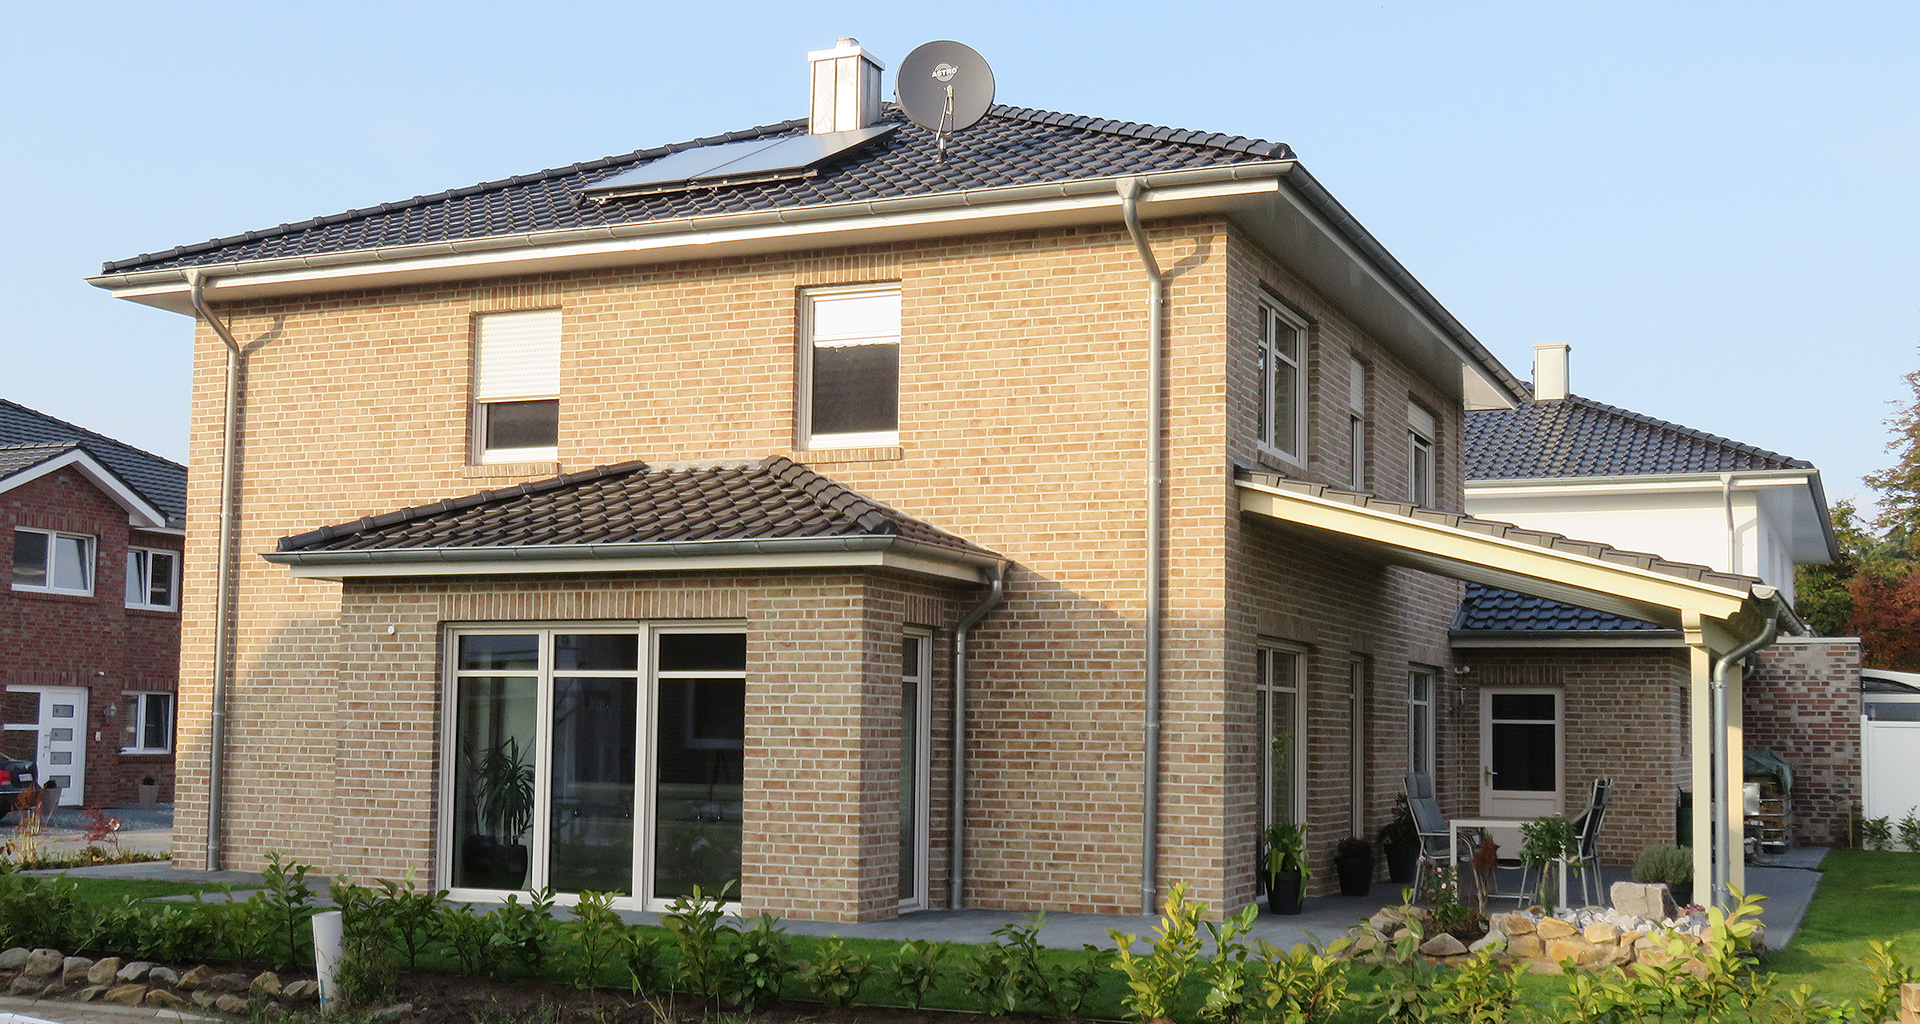 Einfamilienhaus rechte Seite mit Erker und seitliche Terrasse in Wietmarschen-Lohne Emsland 2015